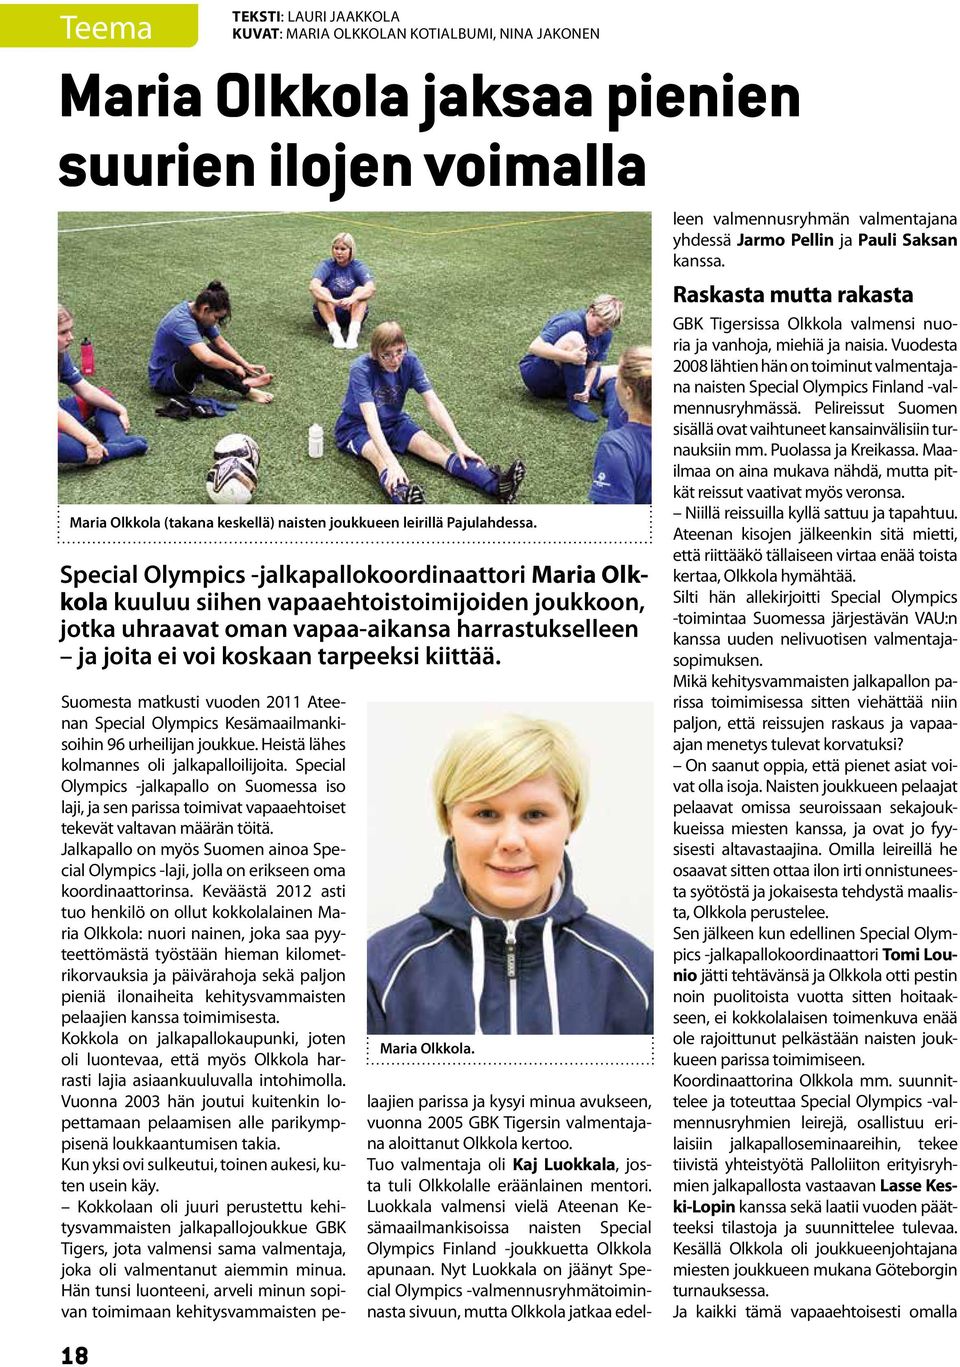 Special Olympics -jalkapallokoordinaattori Maria Olkkola kuuluu siihen vapaaehtoistoimijoiden joukkoon, jotka uhraavat oman vapaa-aikansa harrastukselleen ja joita ei voi koskaan tarpeeksi kiittää.